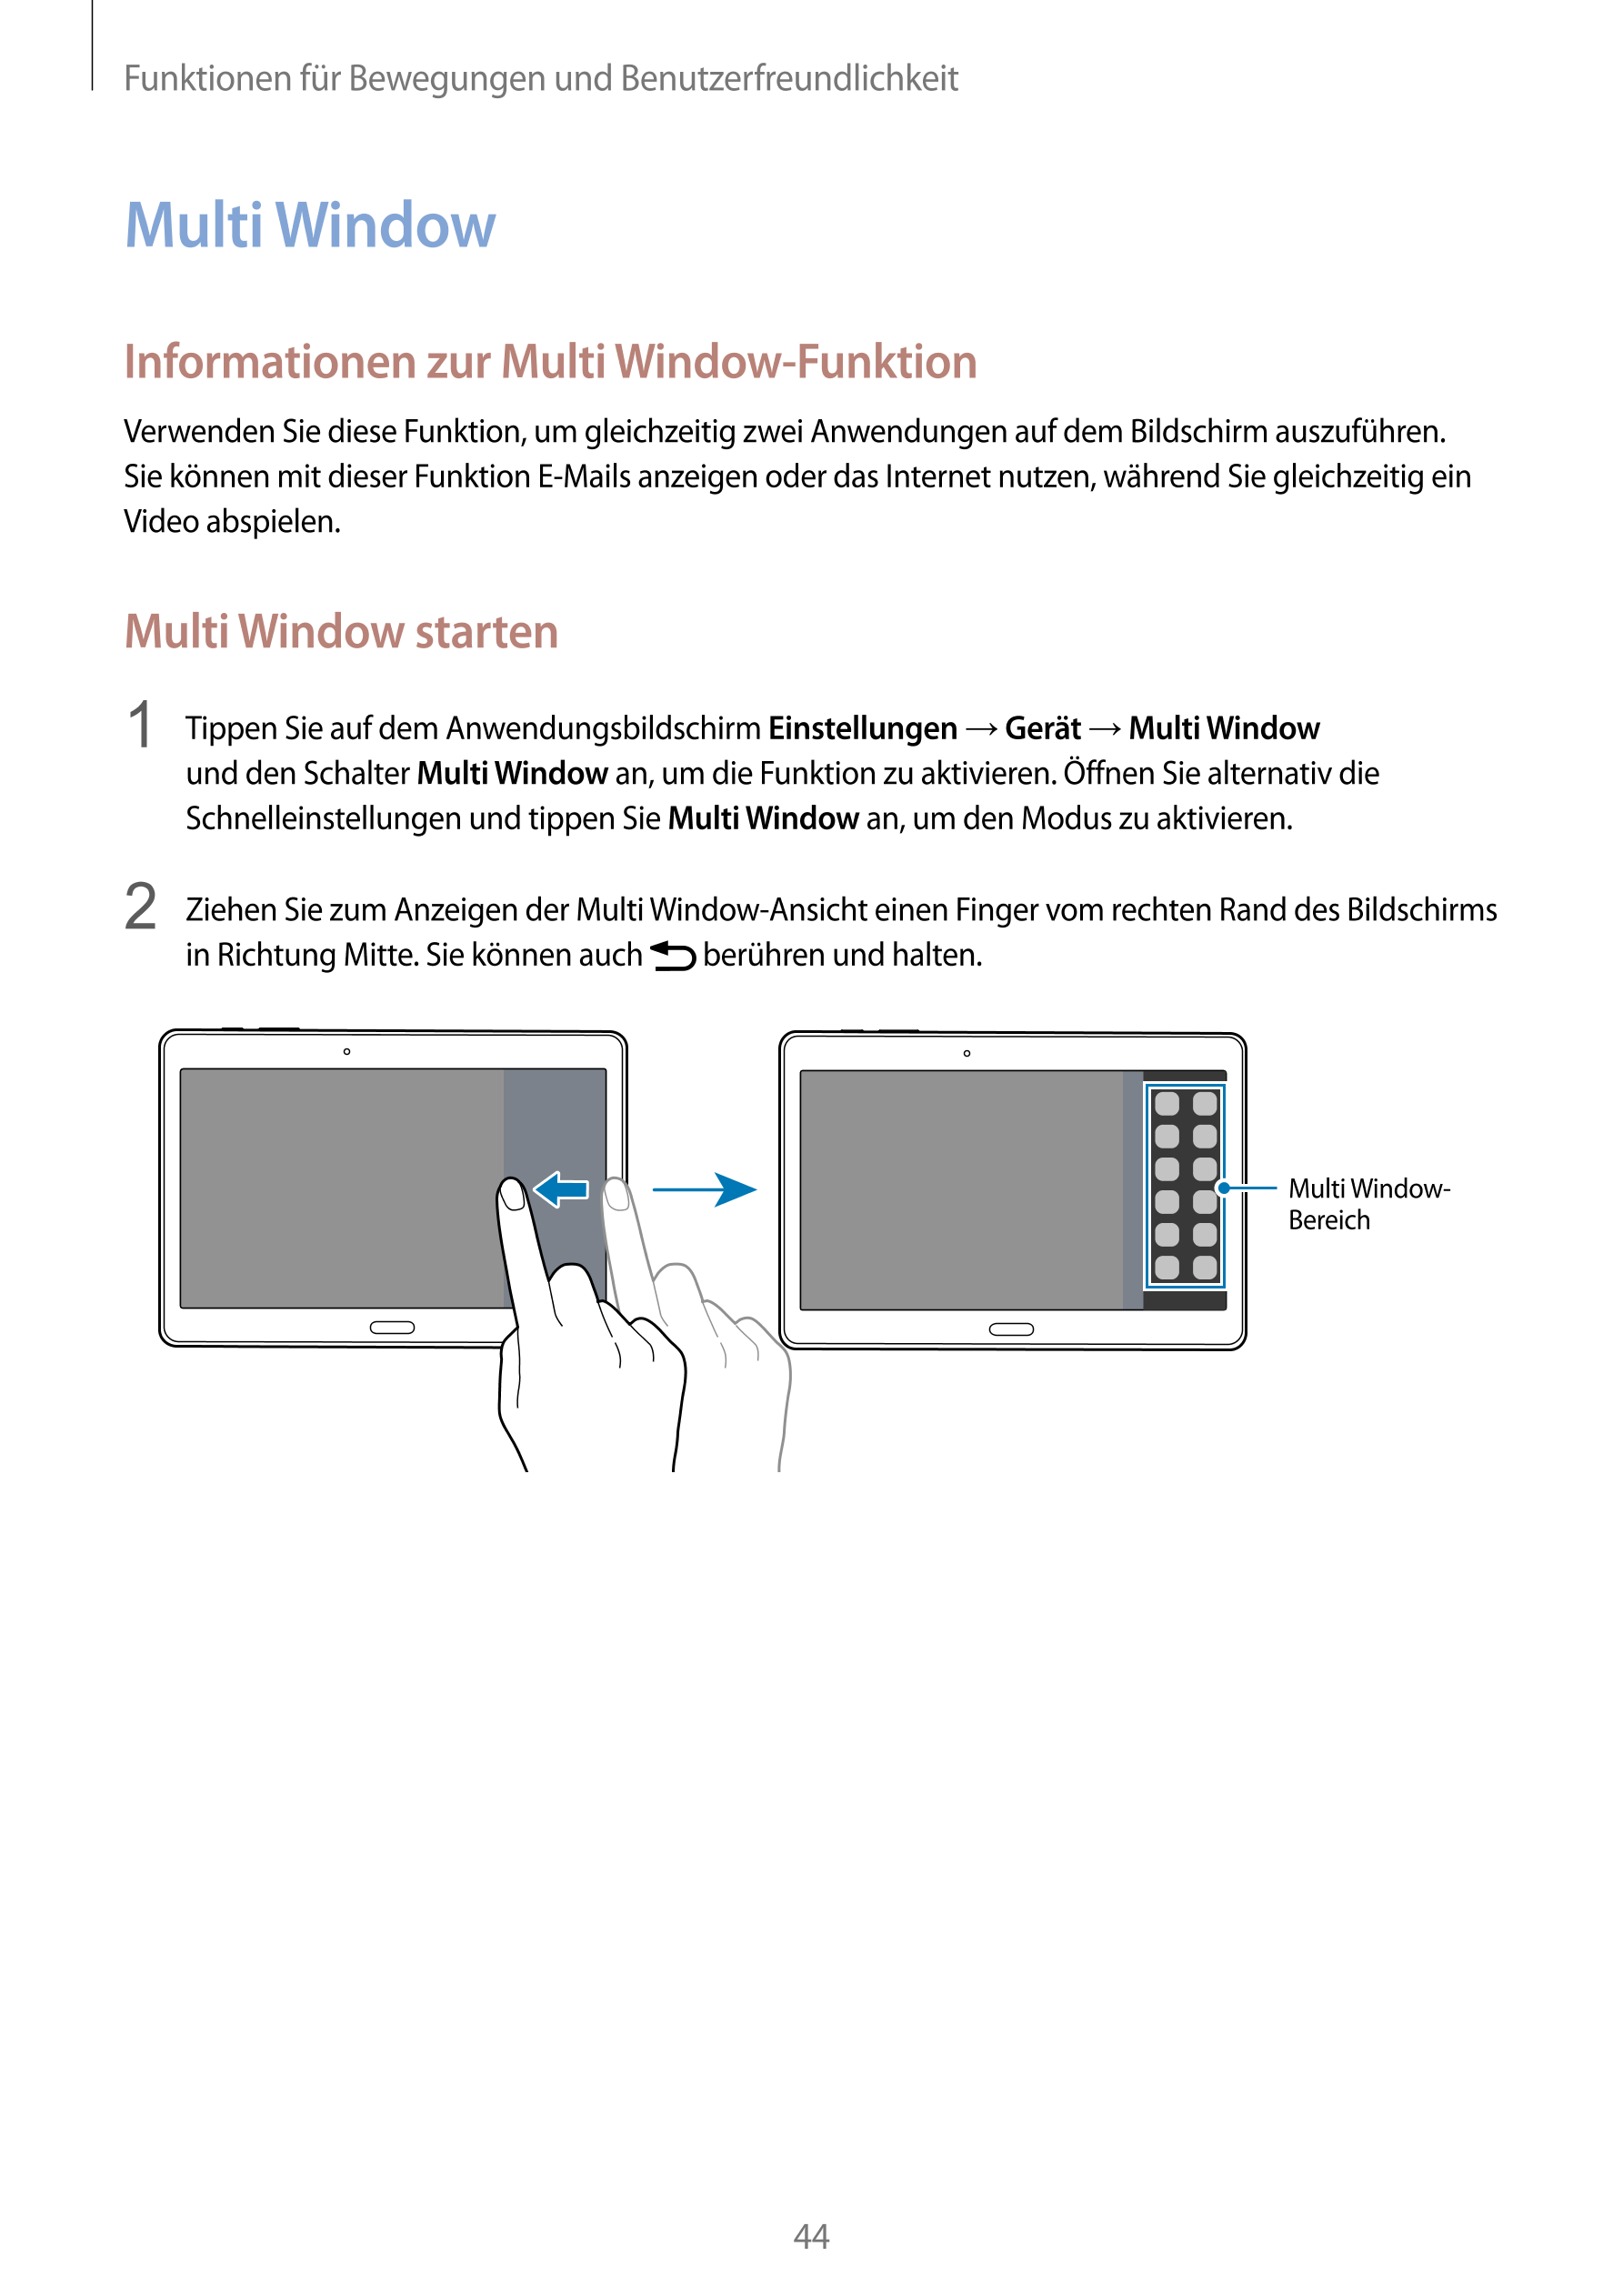 Funktionen für Bewegungen und Benutzerfreundlichkeit
Multi Window
Informationen zur Multi Window-Funktion
Verwenden Sie diese Fu